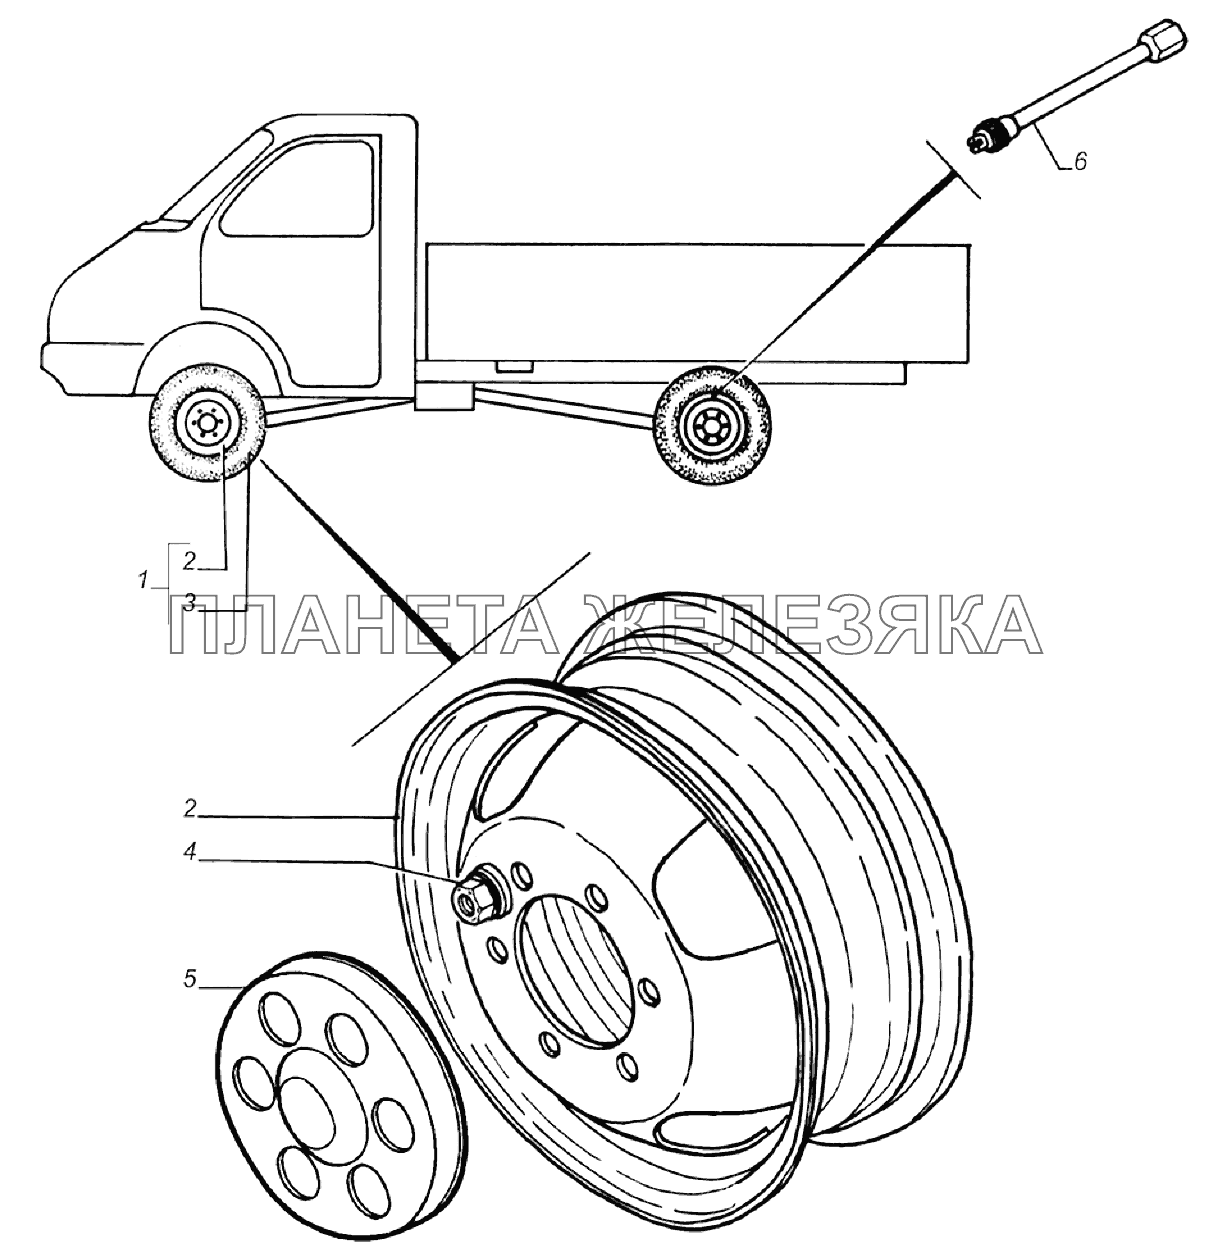 Установка колес на автомобиле ГАЗель 4x4 (Дополнение)